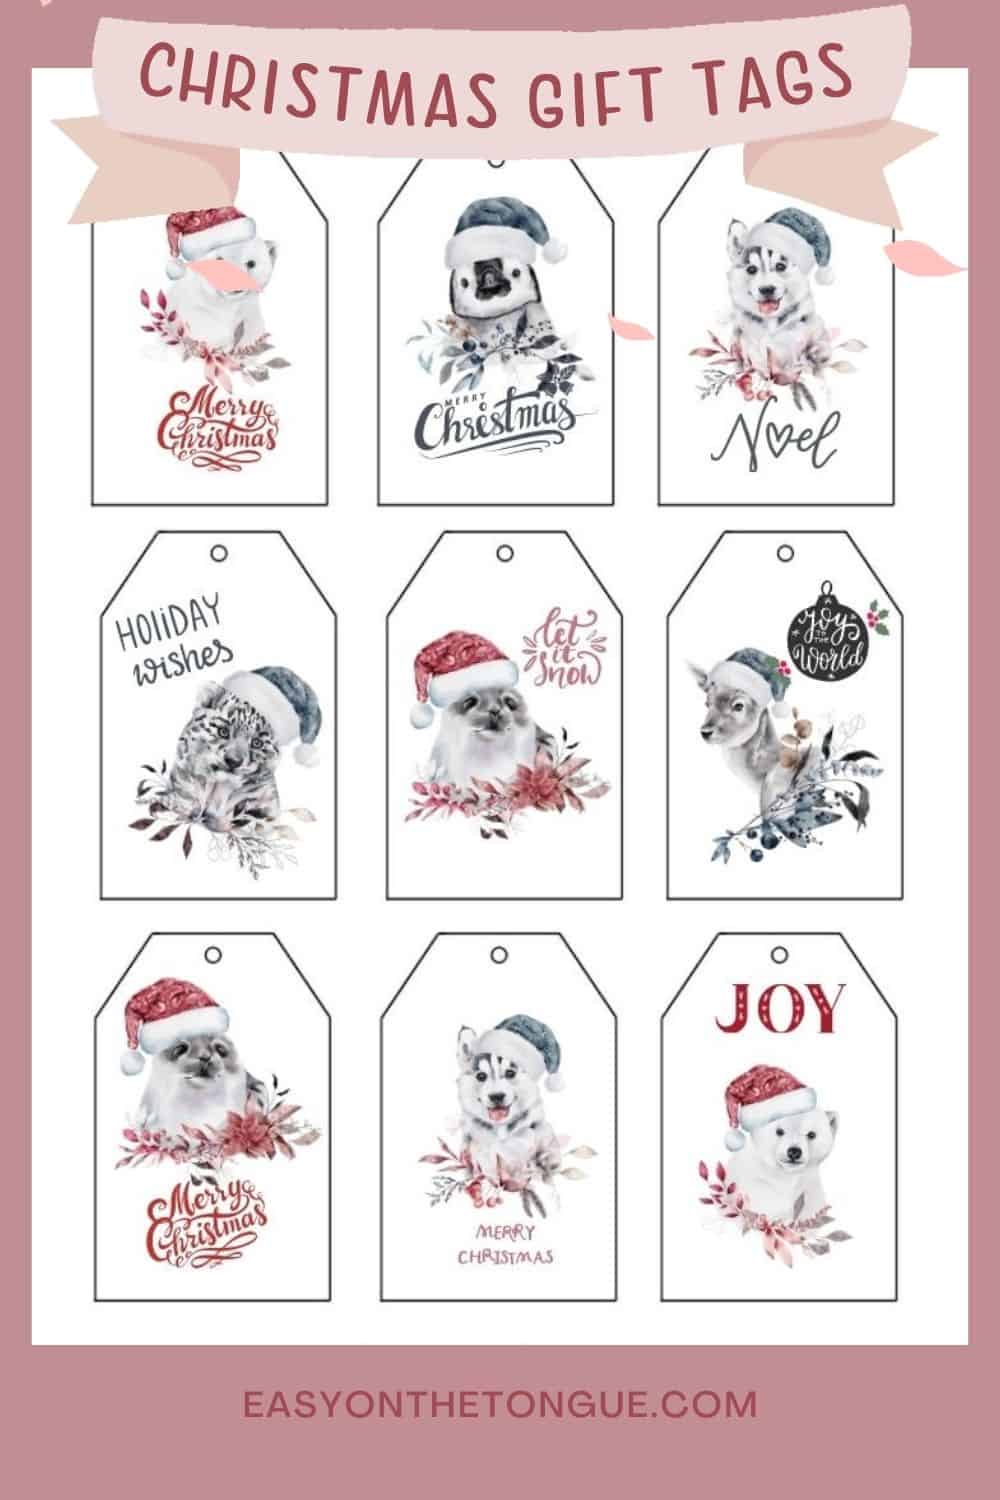 Grab the free snow animal Christmas gift tags